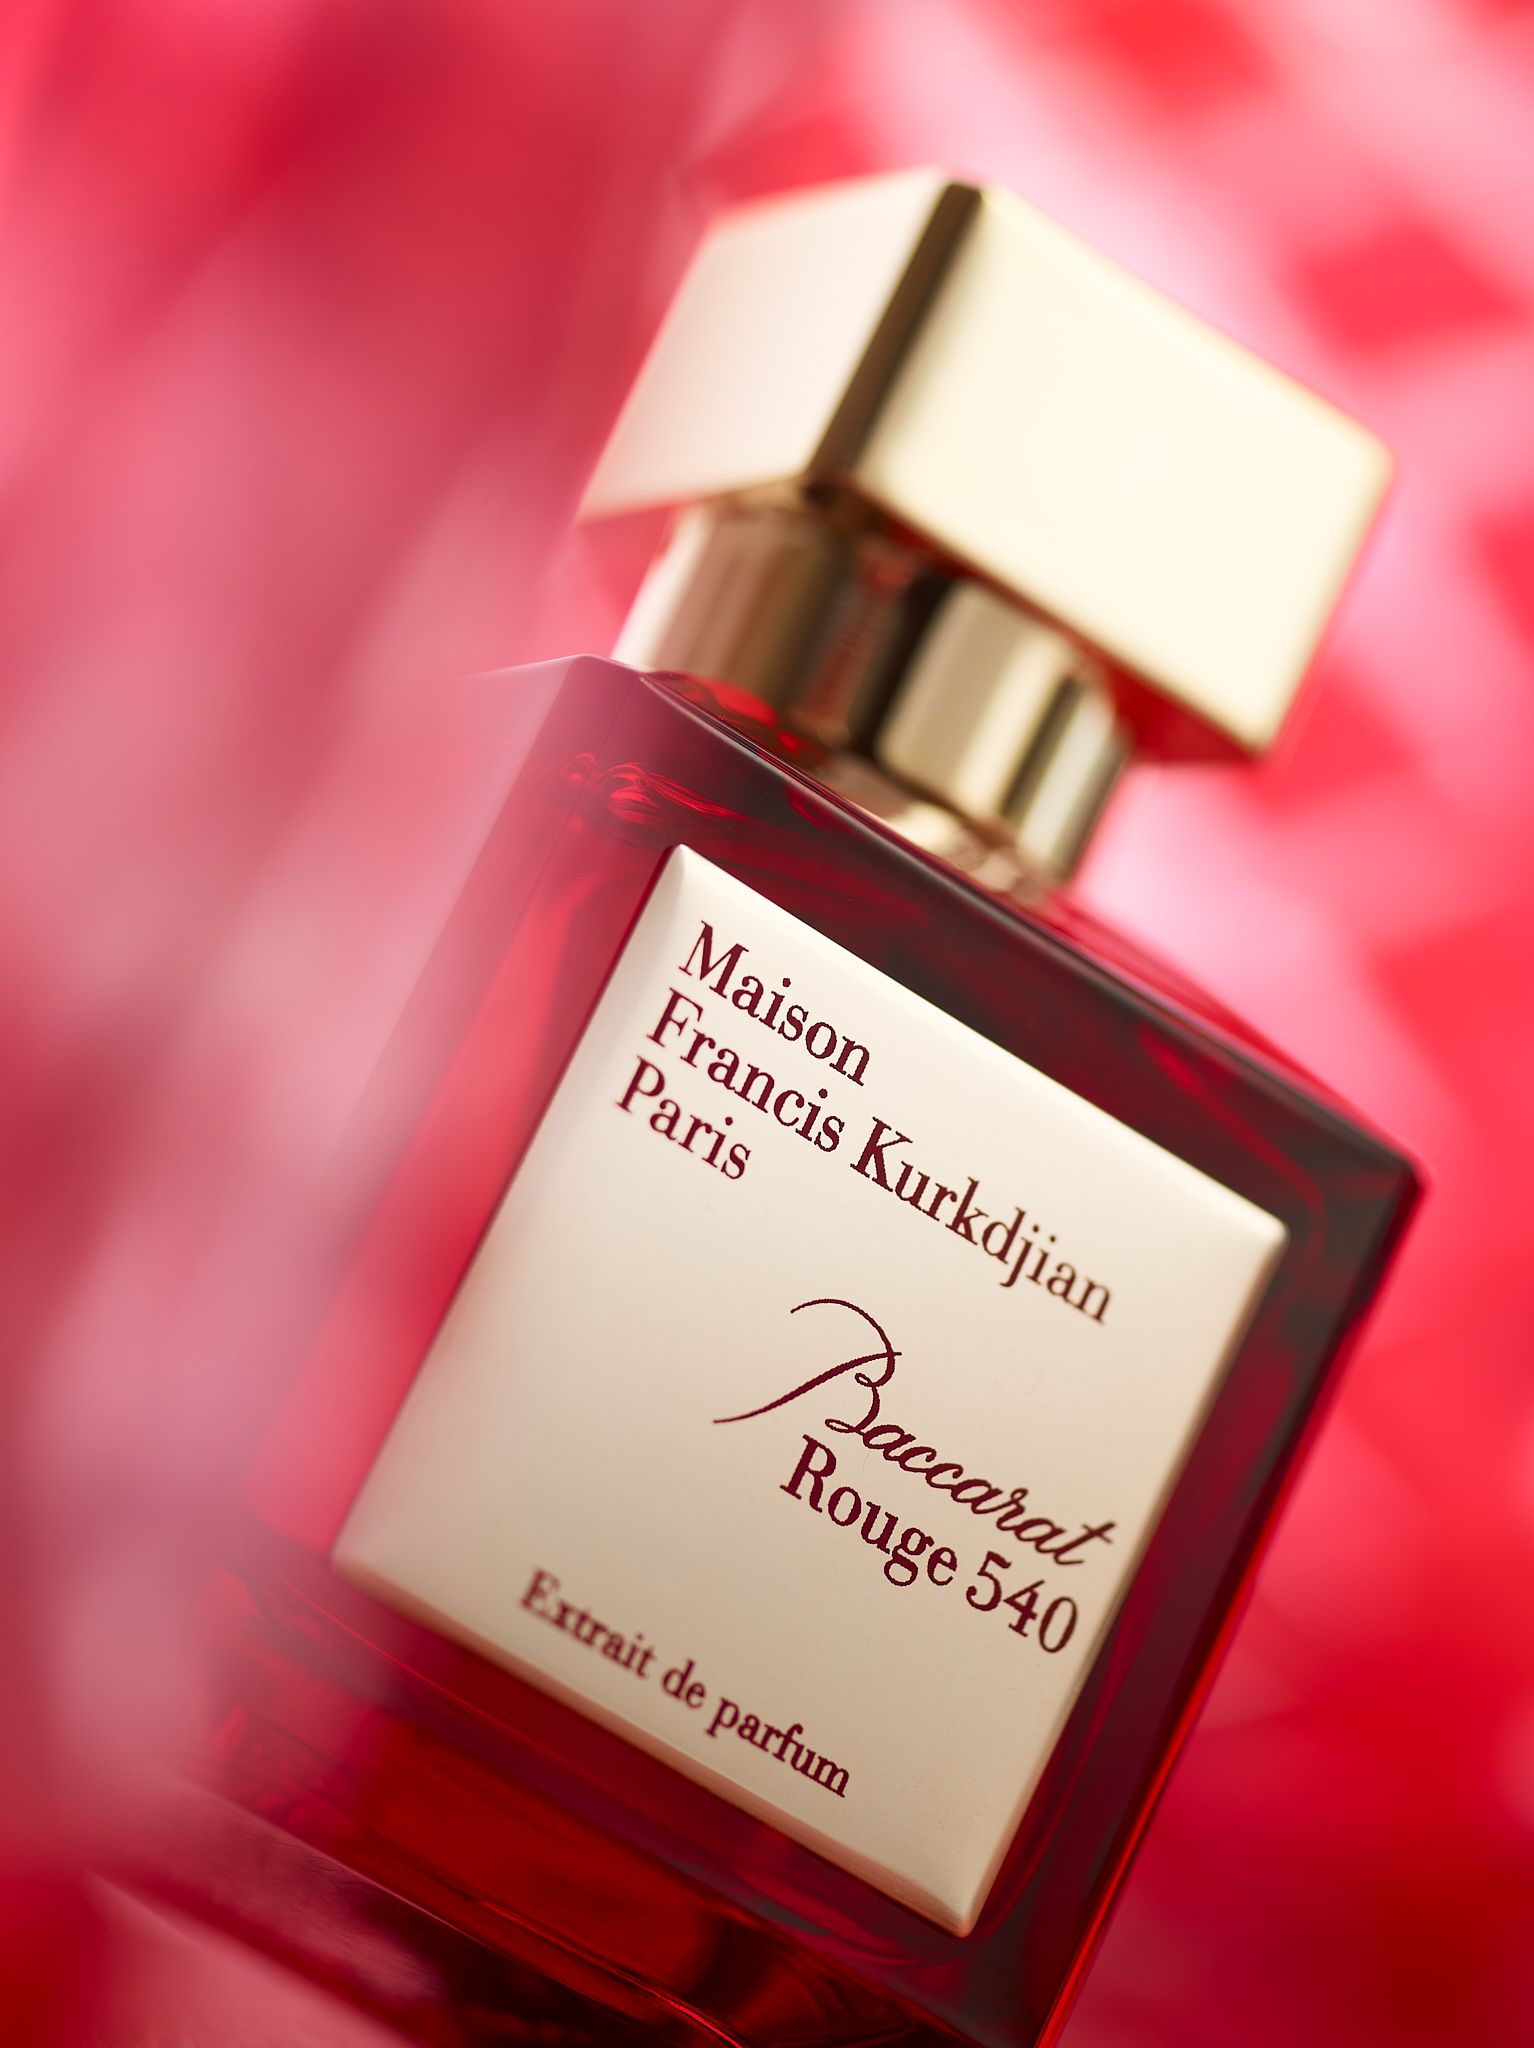 MFK - Baccarat Rouge 540 Extrait de Parfum - Pic. 1